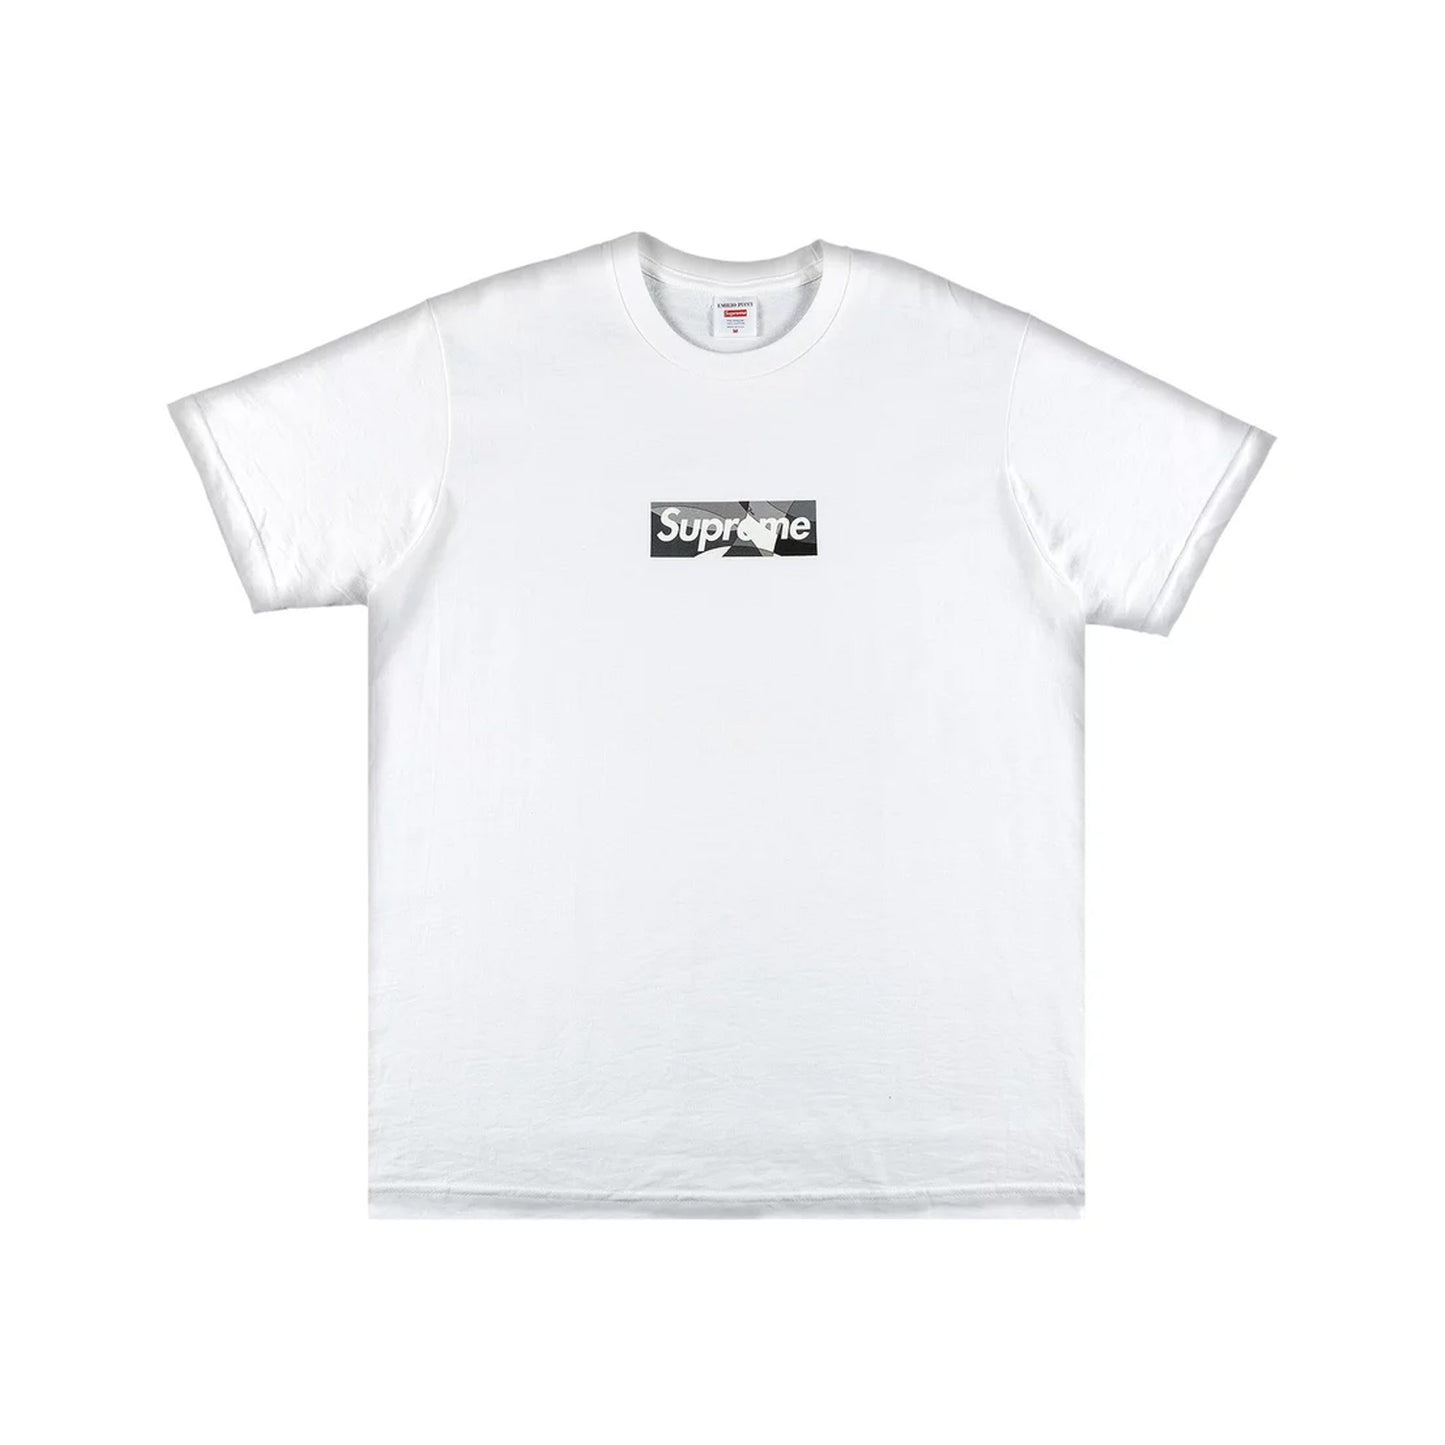 Supreme x Emilio Pucci Box Logo Crew Neck T-Shirt